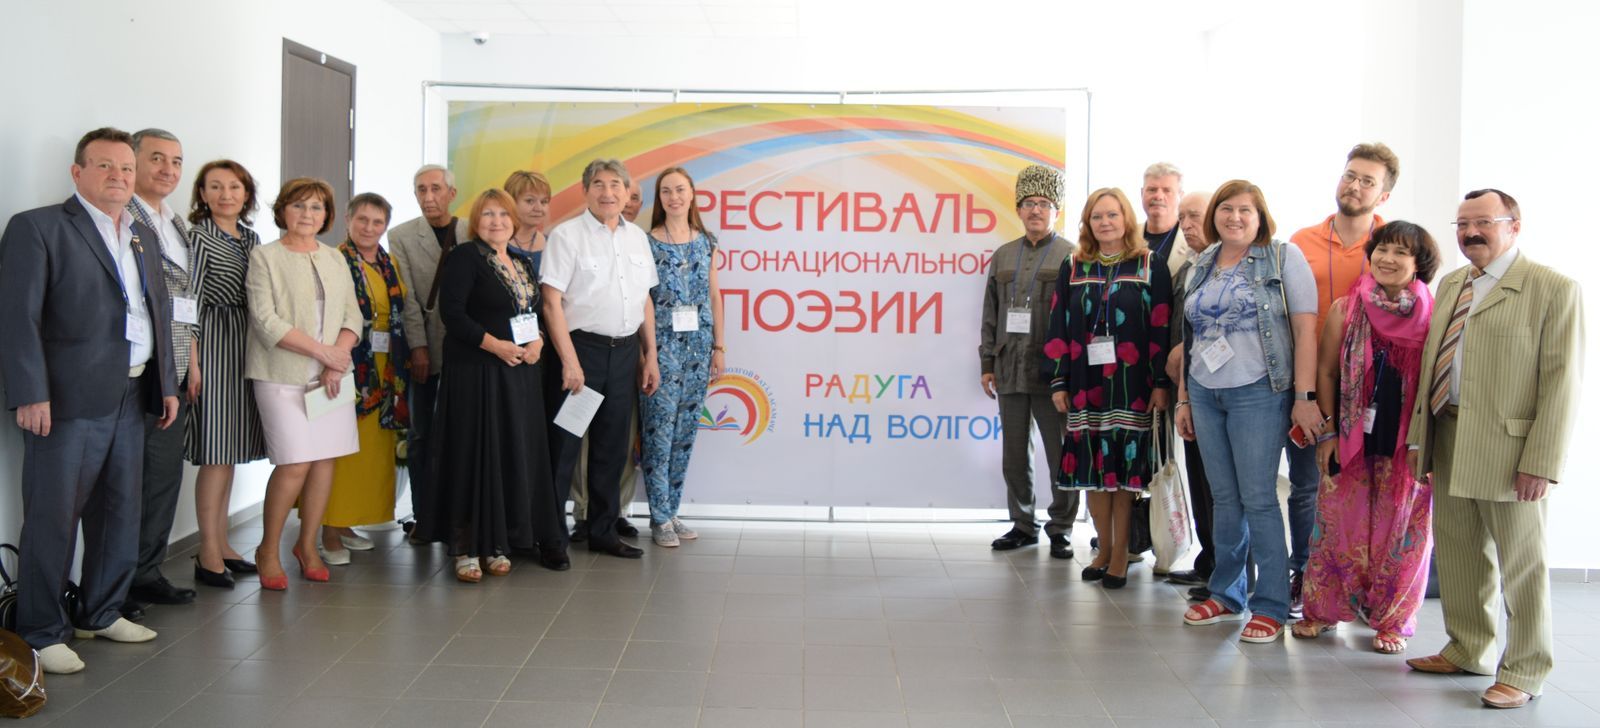 Поэт из Нальчика выступил на всероссийском фестивале поэзии в Чебоксарах